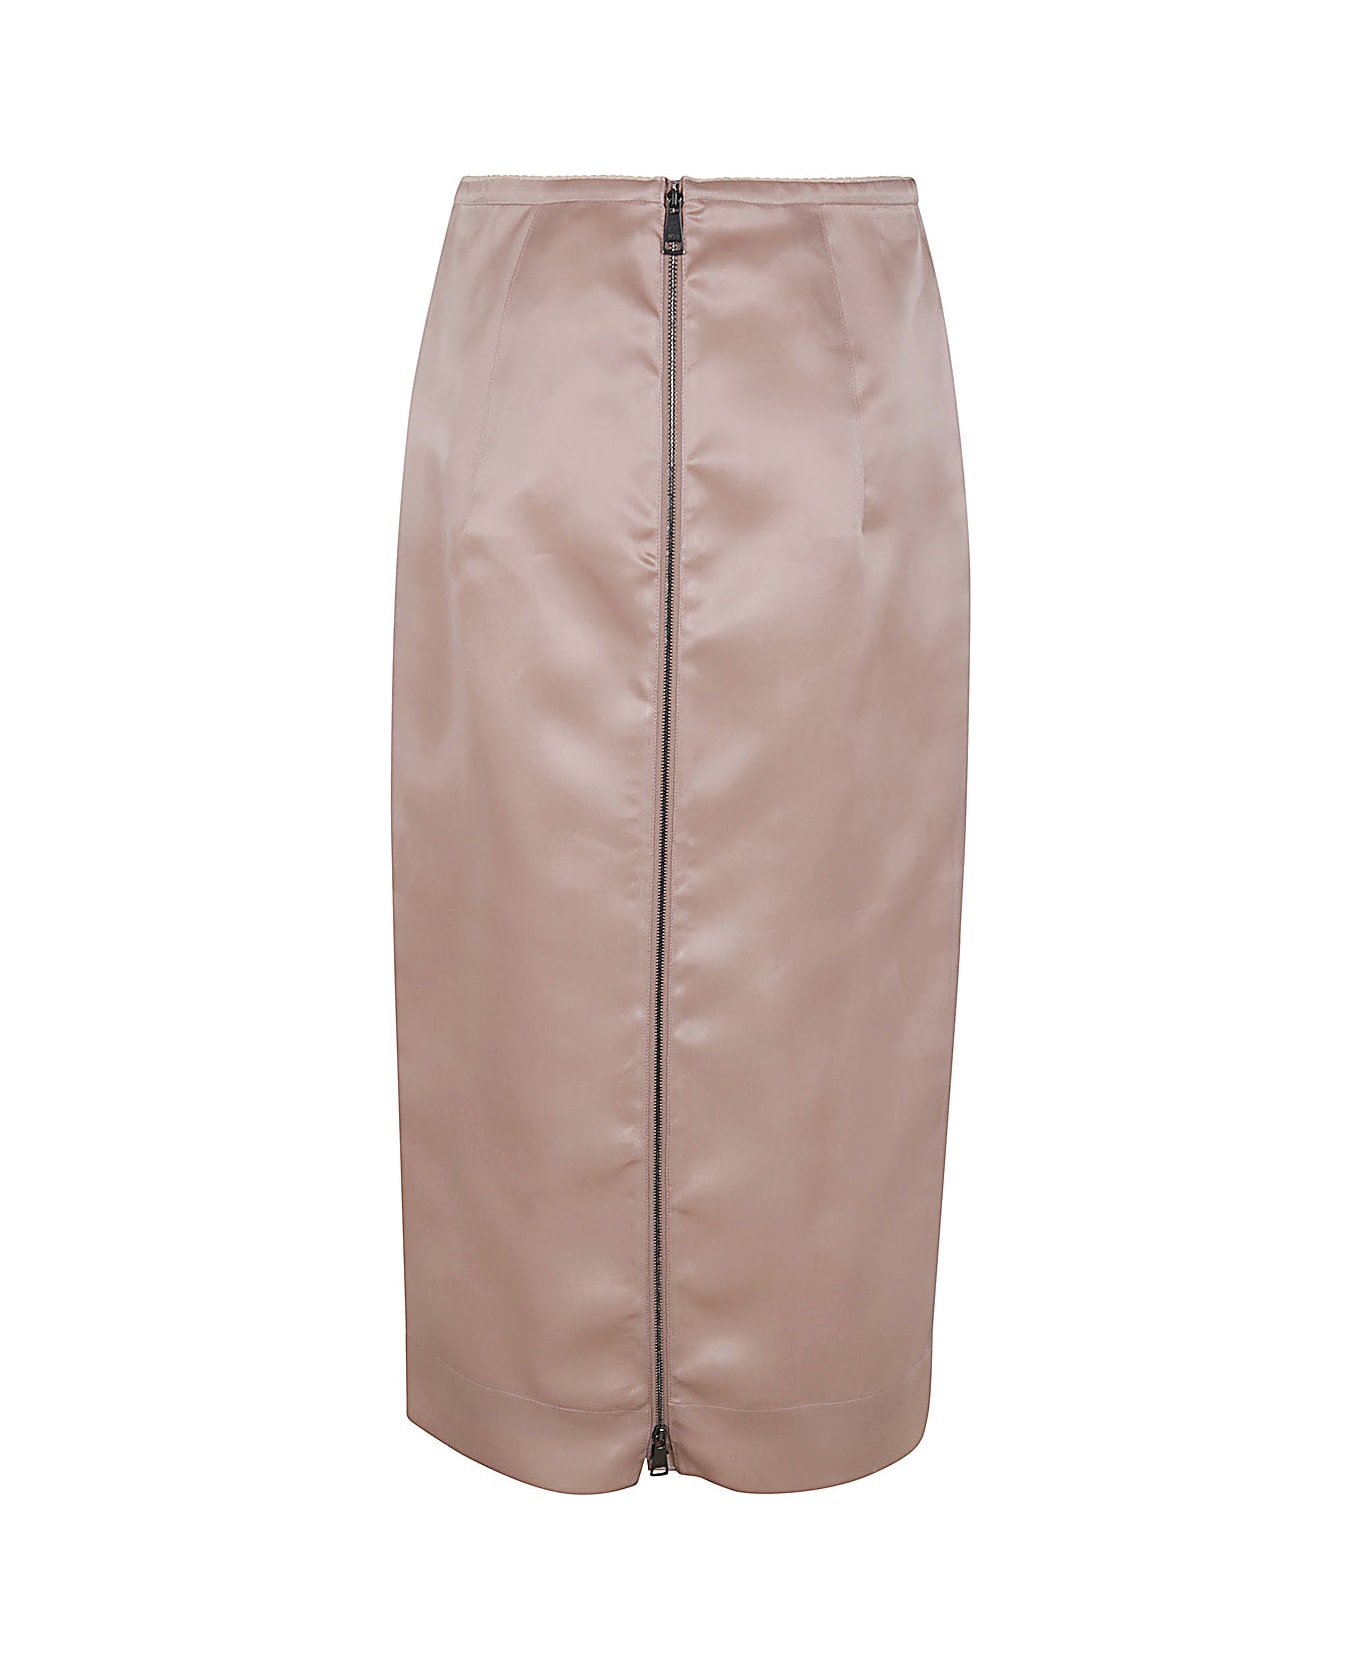 N.21 Woven Skirt - Blush スカート